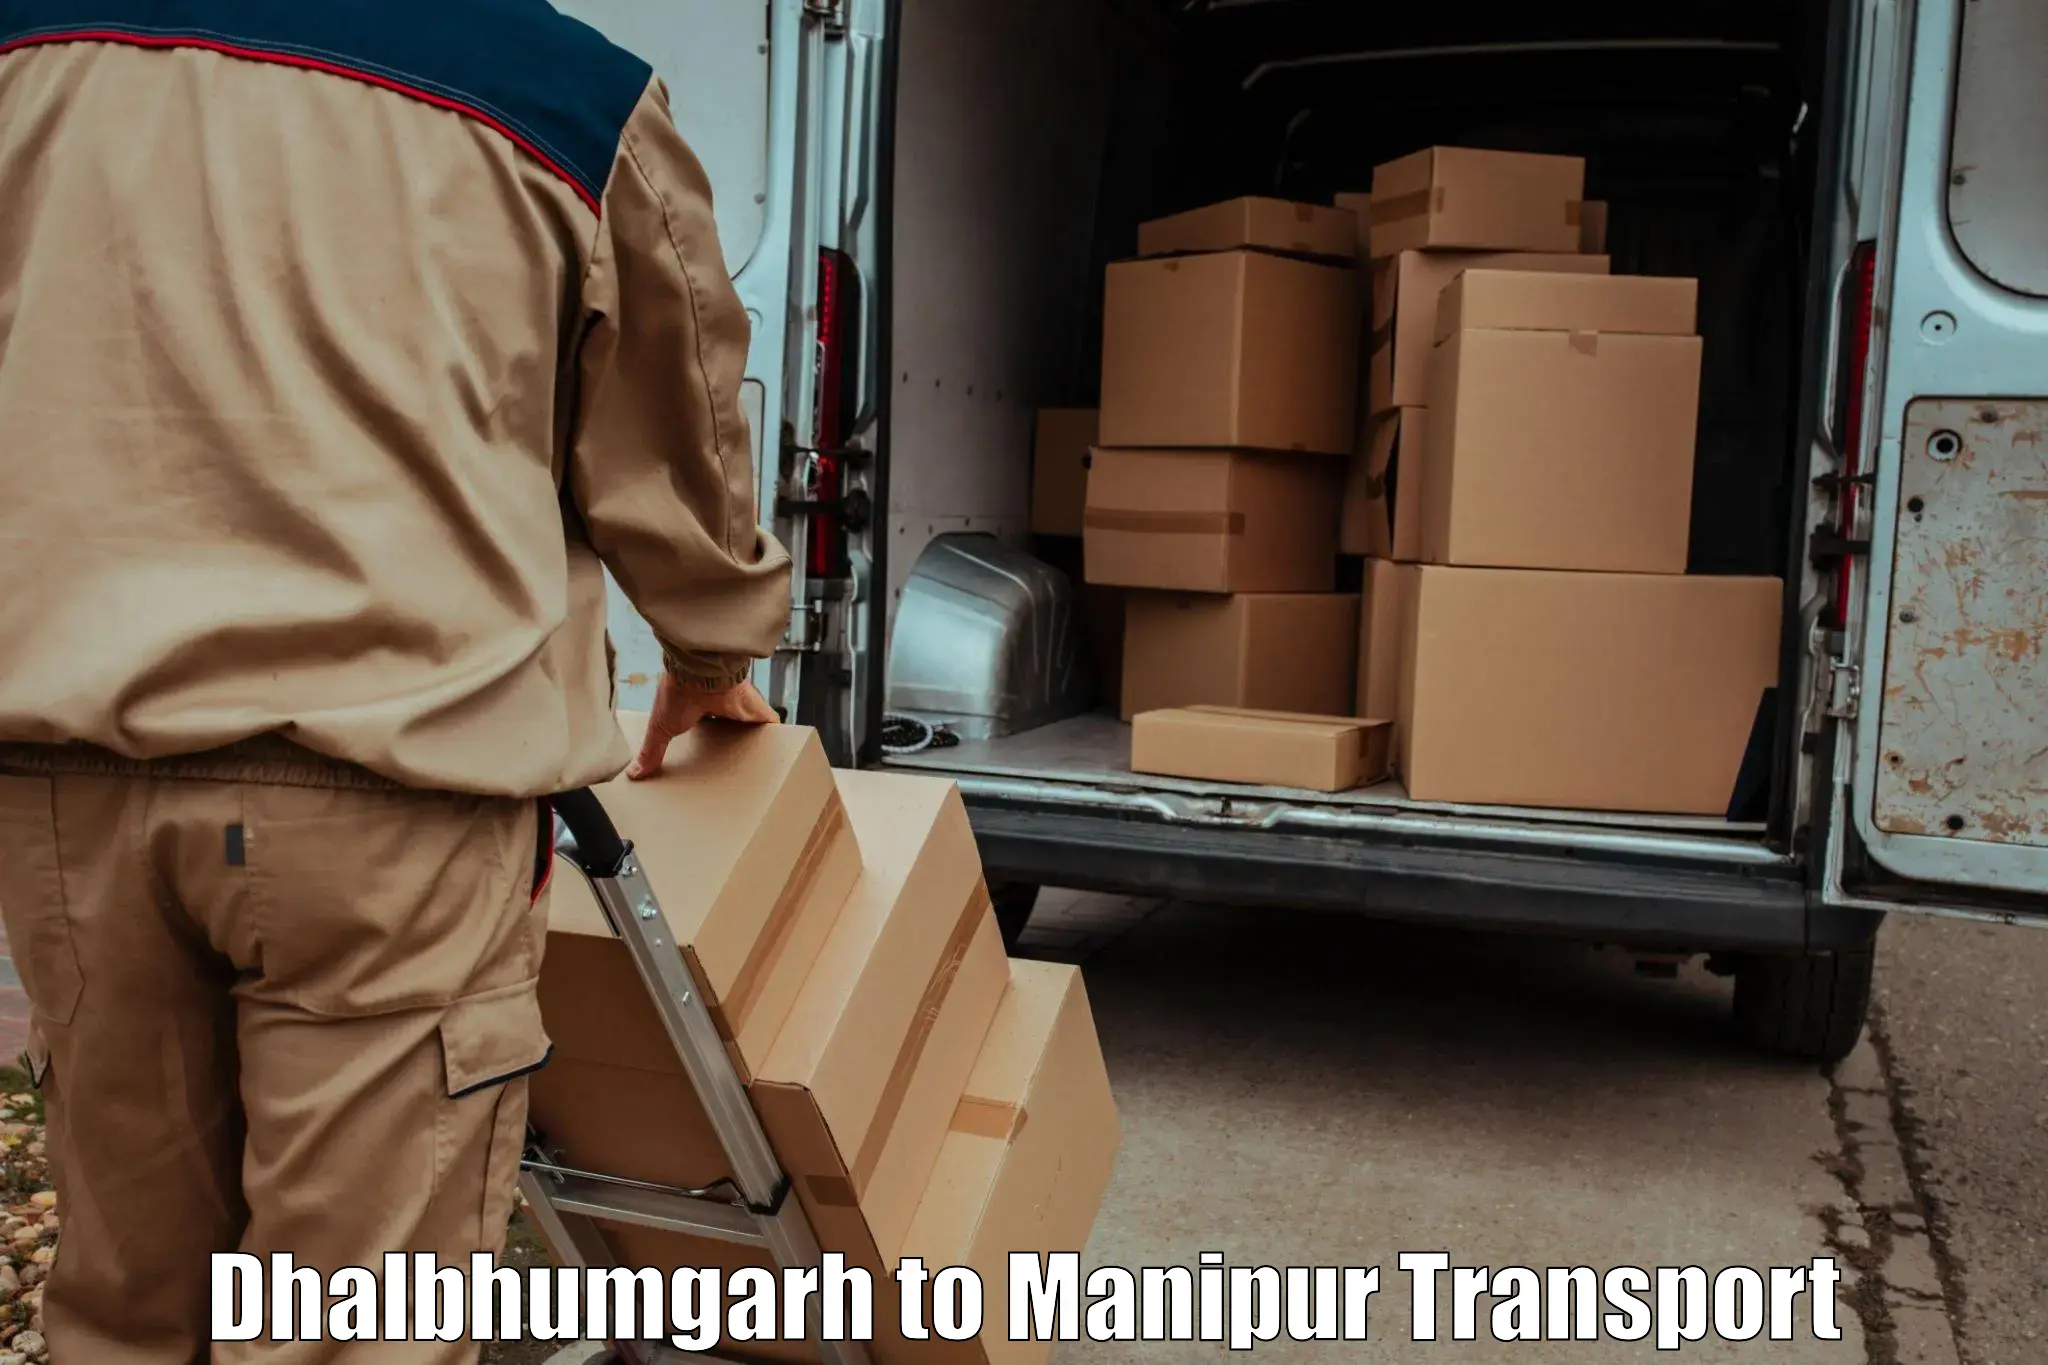 Two wheeler parcel service Dhalbhumgarh to Thoubal